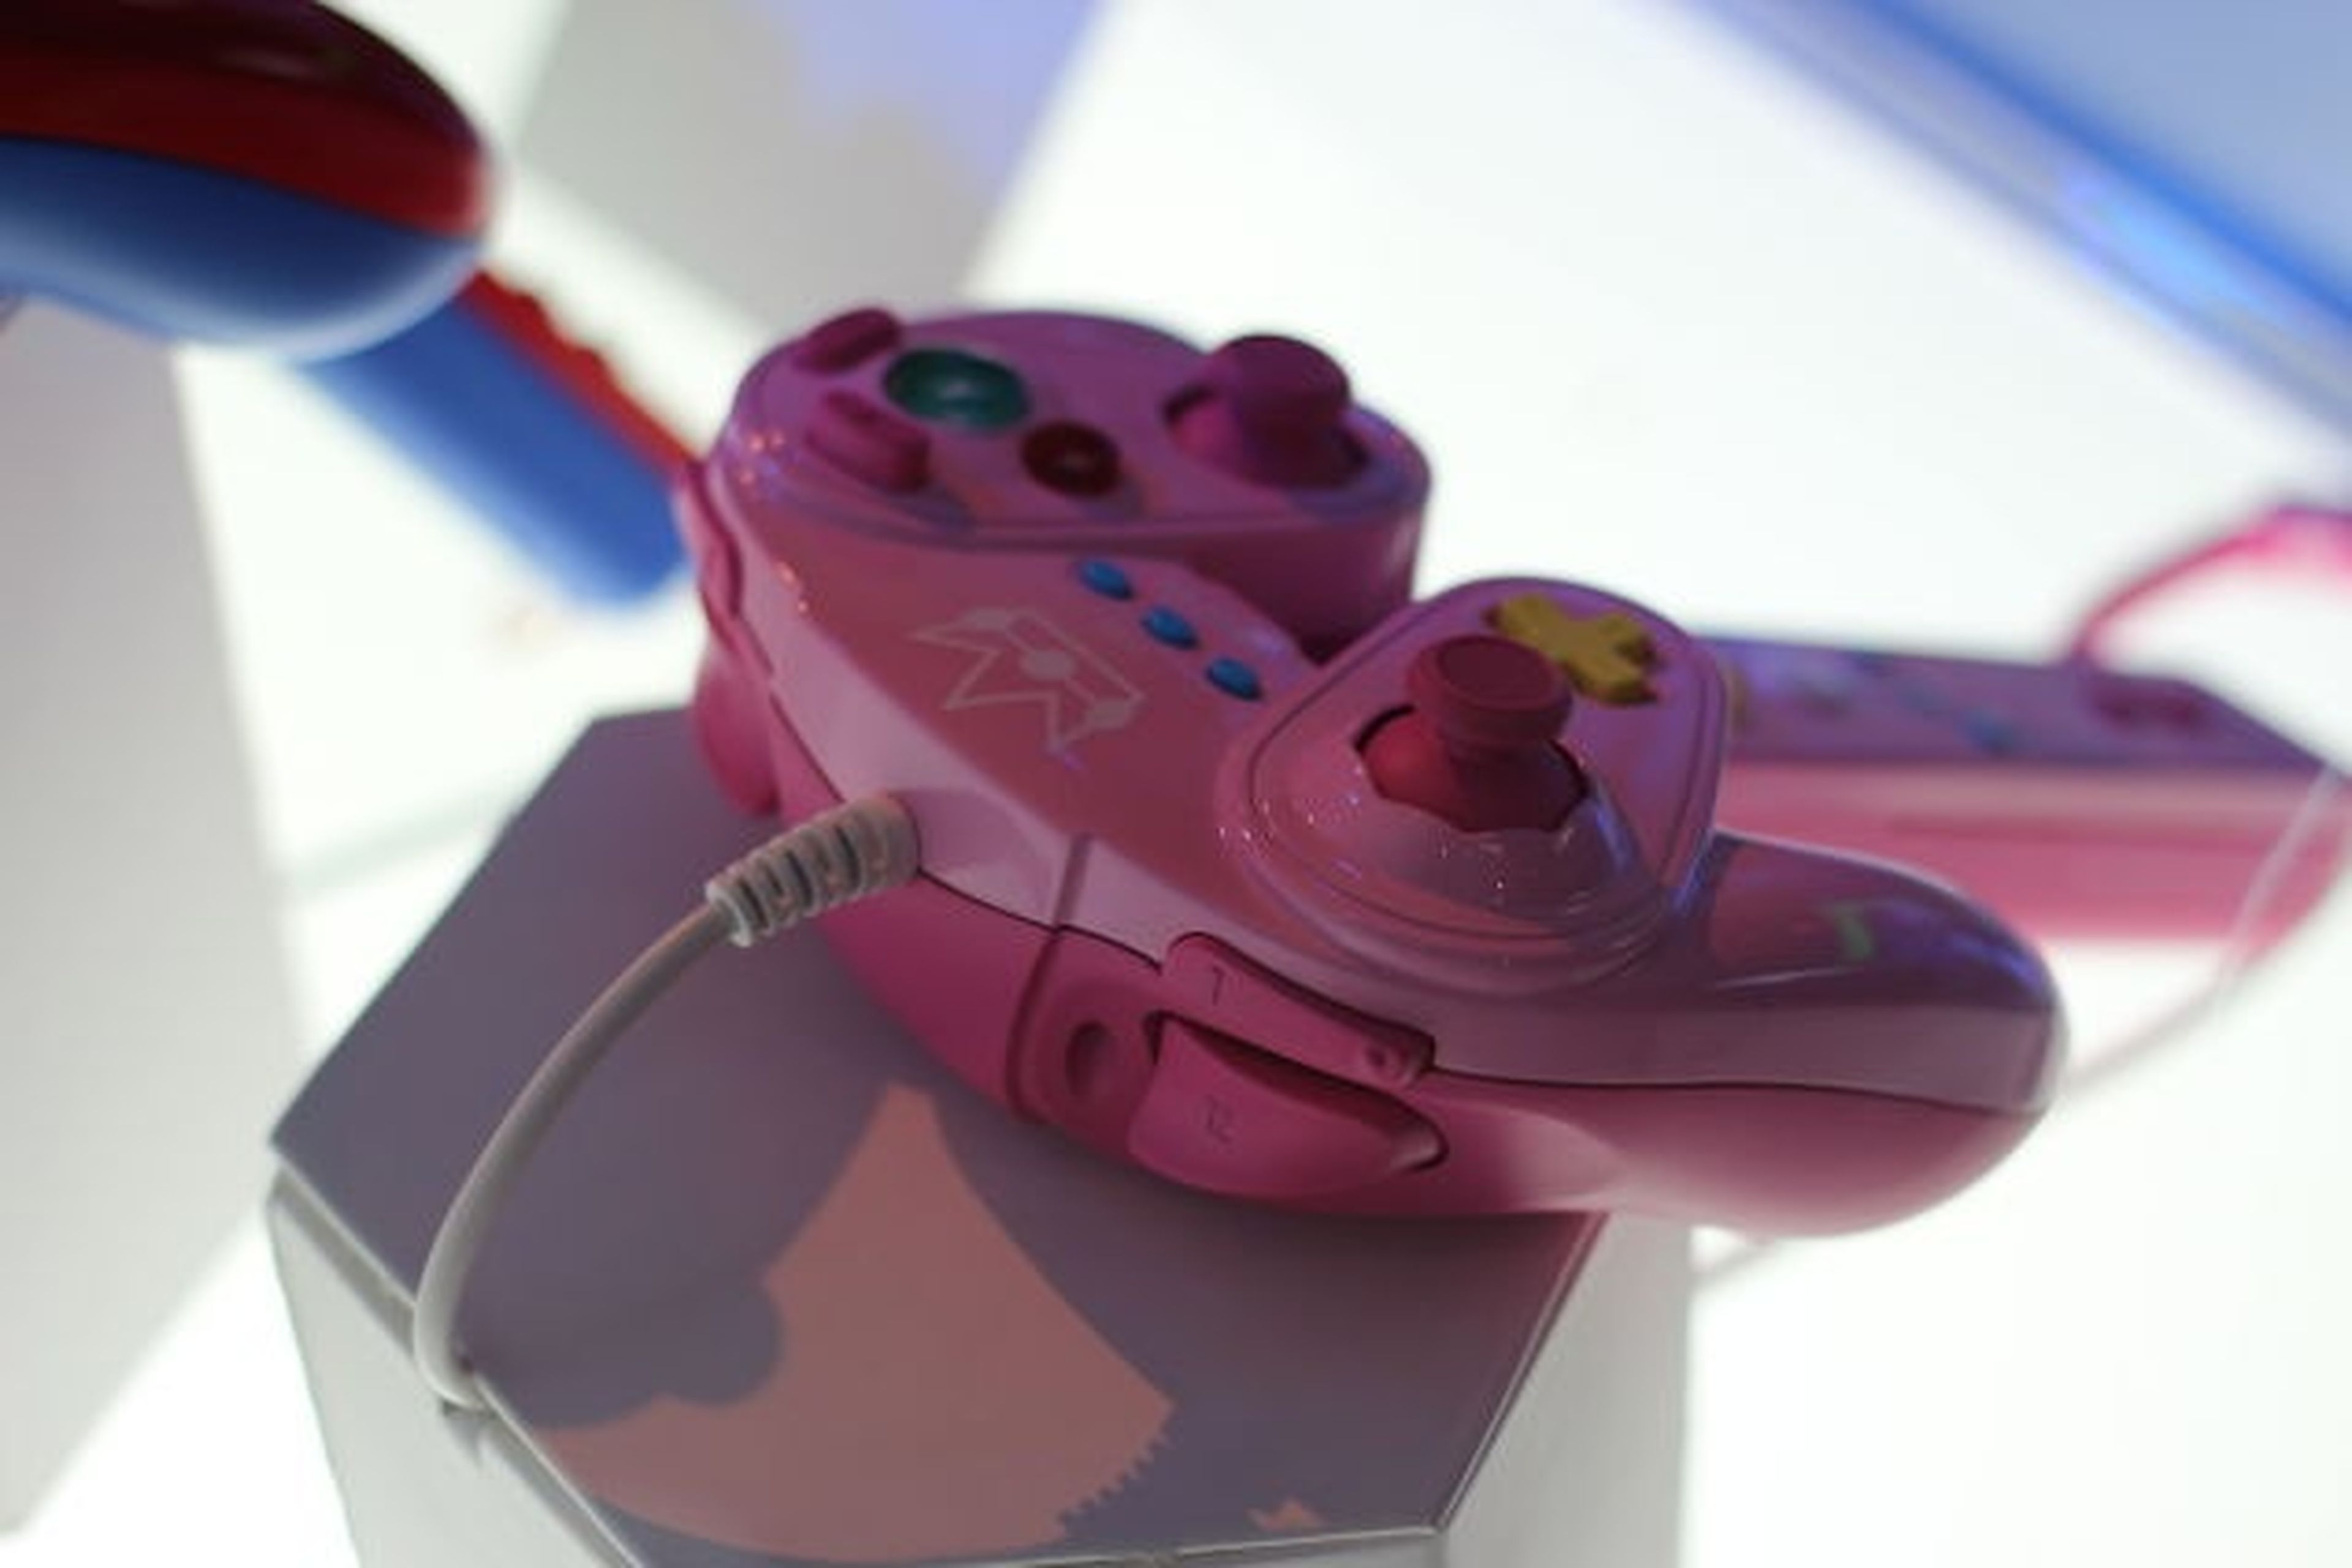 Fecha de lanzamiento de los mandos para Wii U al estilo GameCube